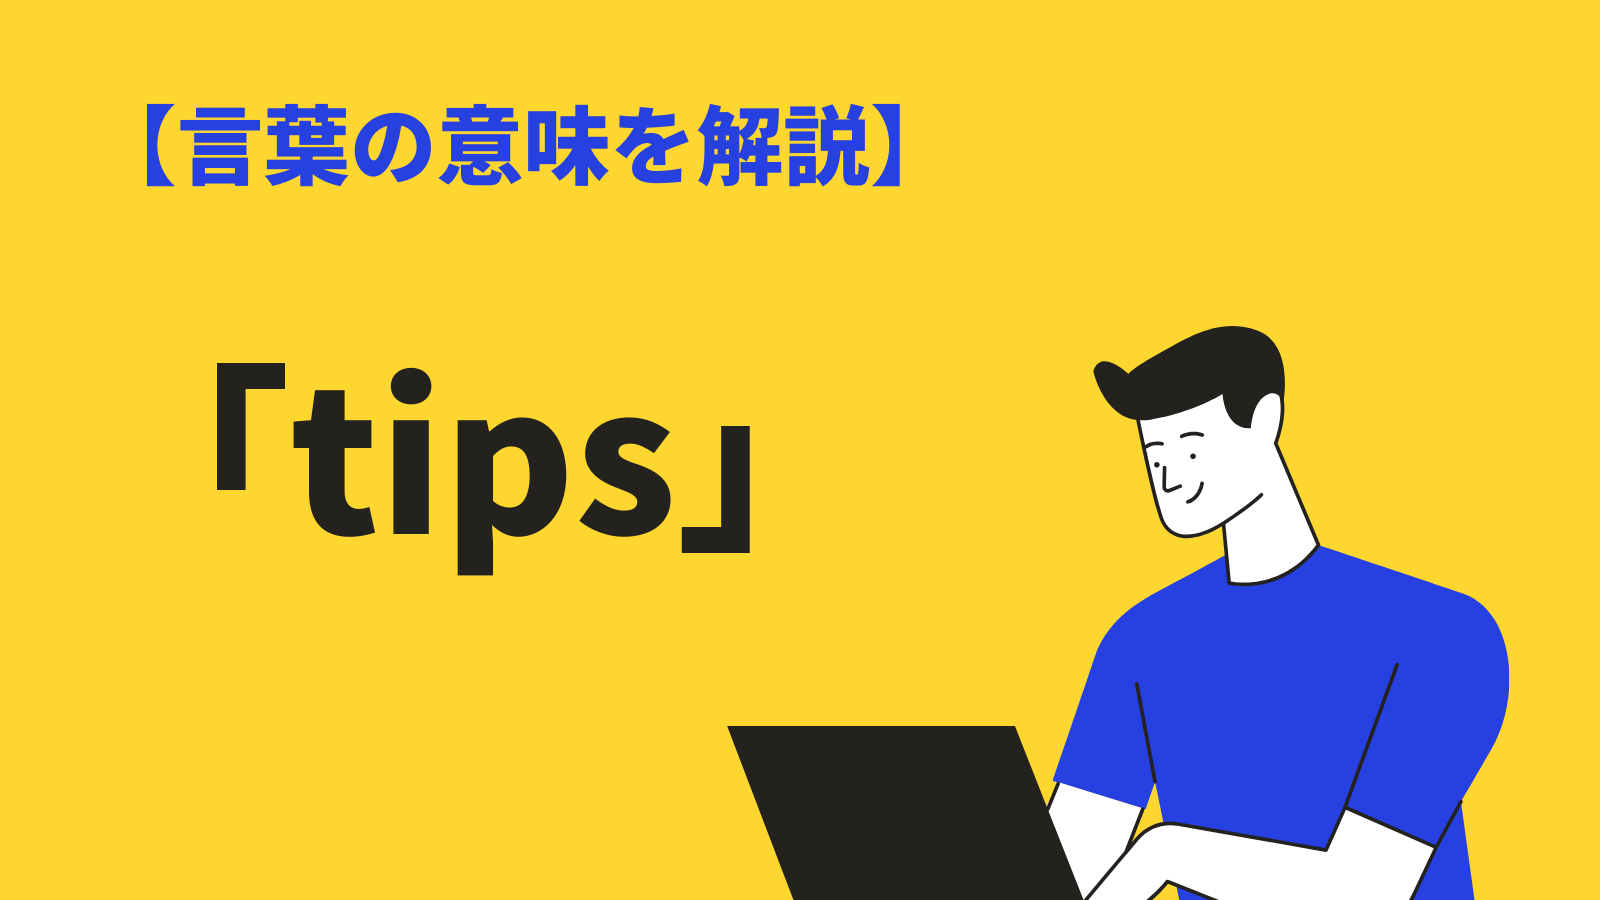 「tips」の意味とは？ITやビジネスでの使い方と例文、類語を解説